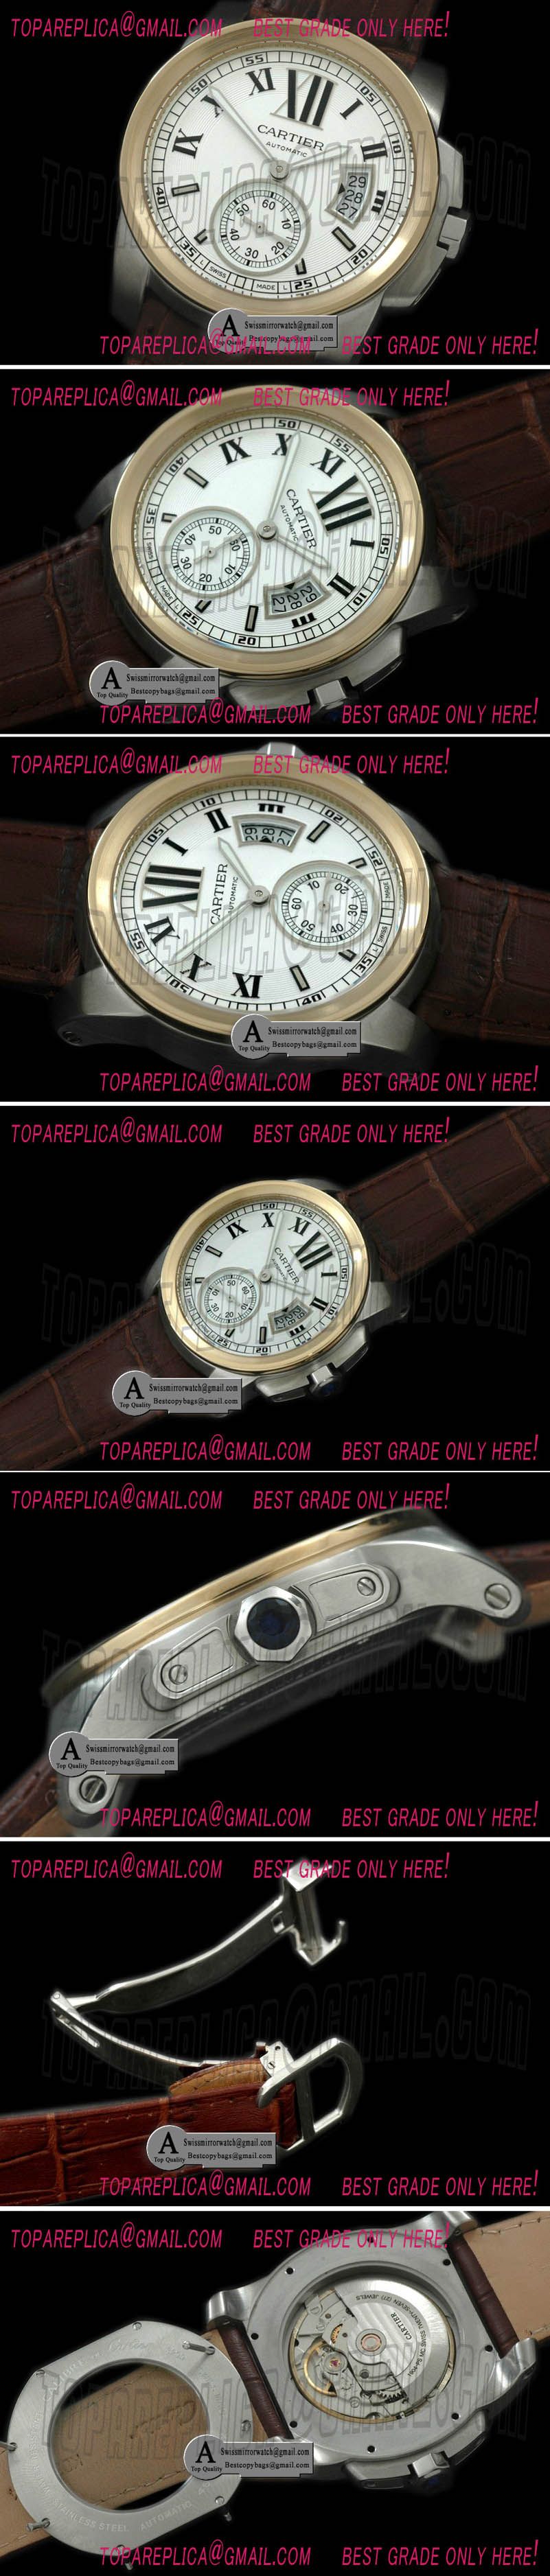 Cartier Calibre de Cartier SS/Yellow Gold/Leather White Asian 2836 28800bph Replica Watches